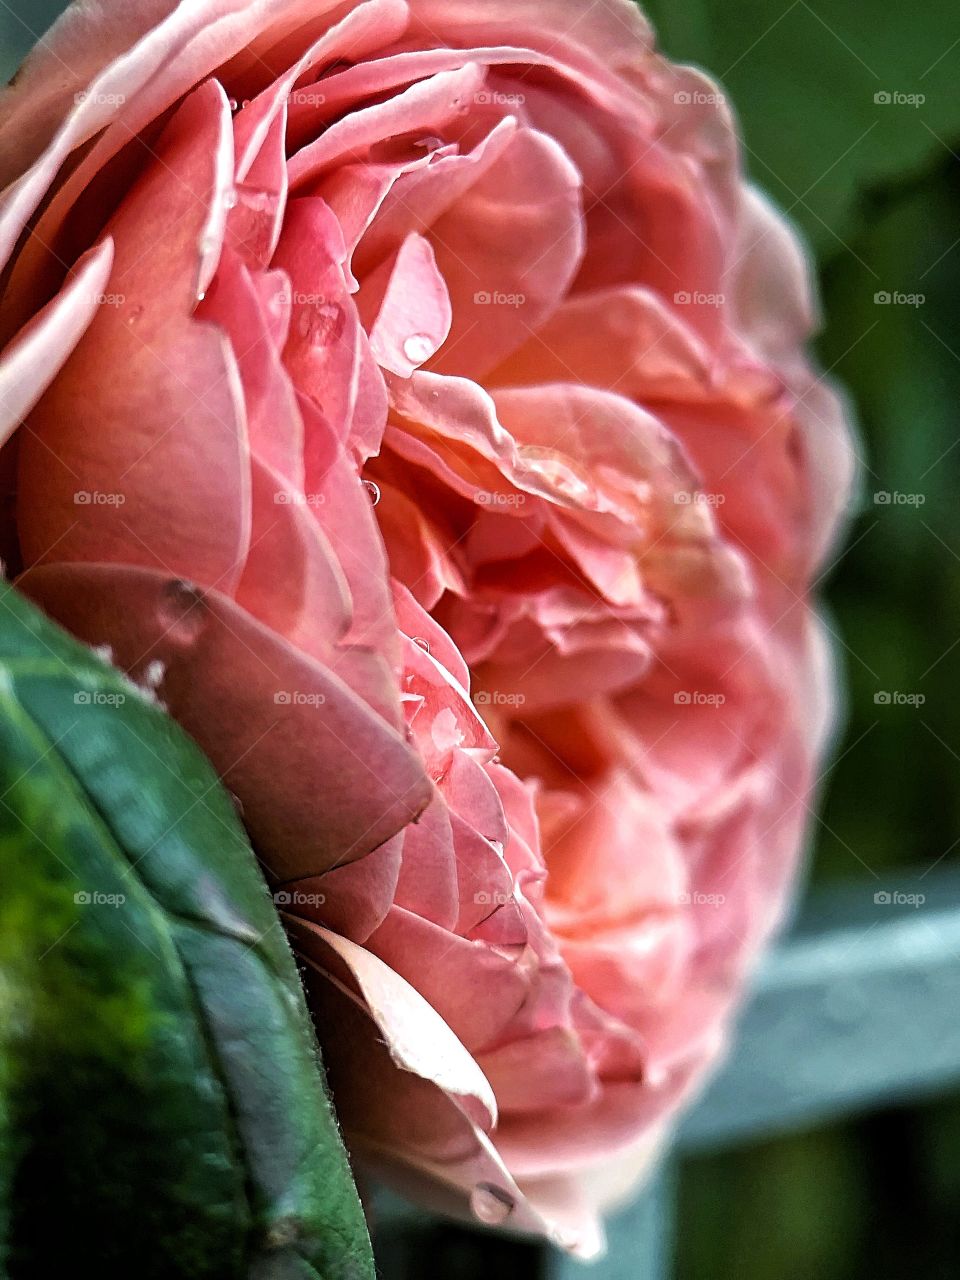 A close up of a pink peony rose